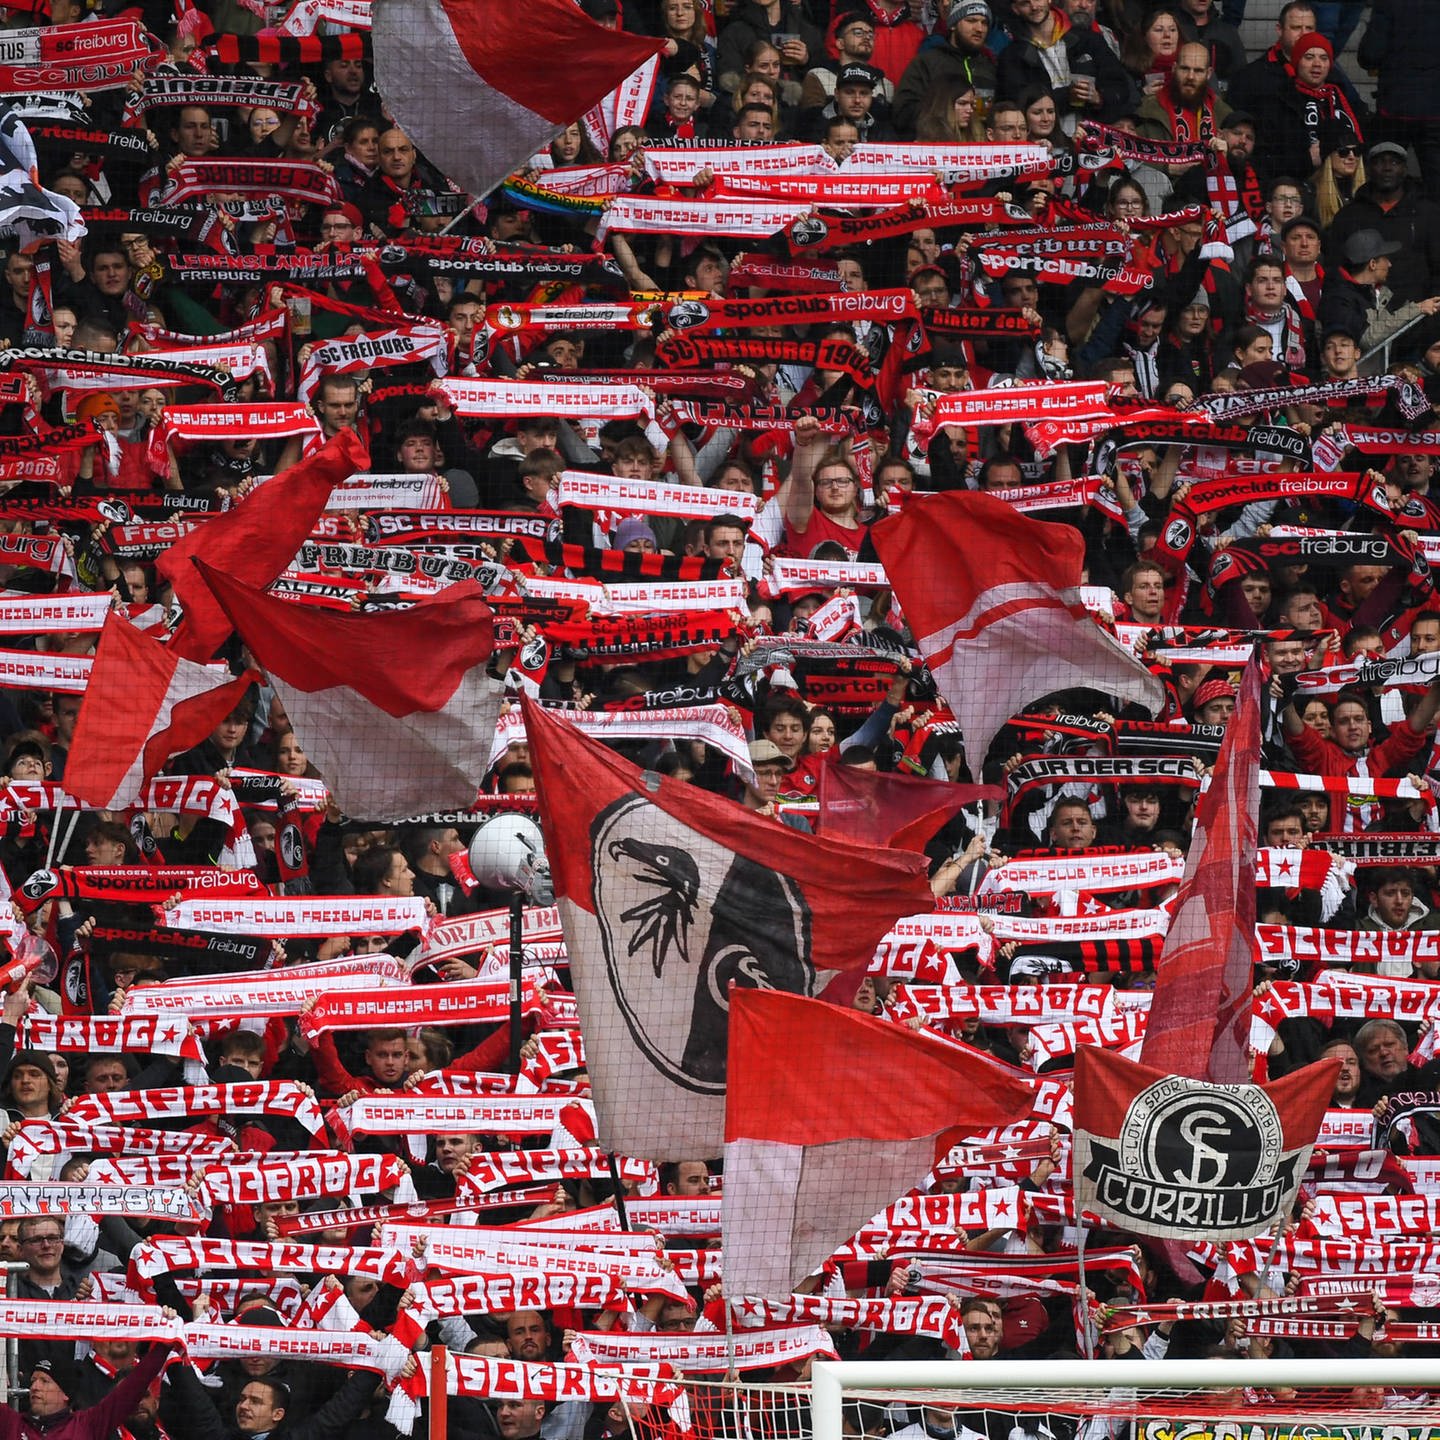 Ab 1845 Uhr live im Audiostream SC Freiburg im Rückspiel gegen Juventus Turin